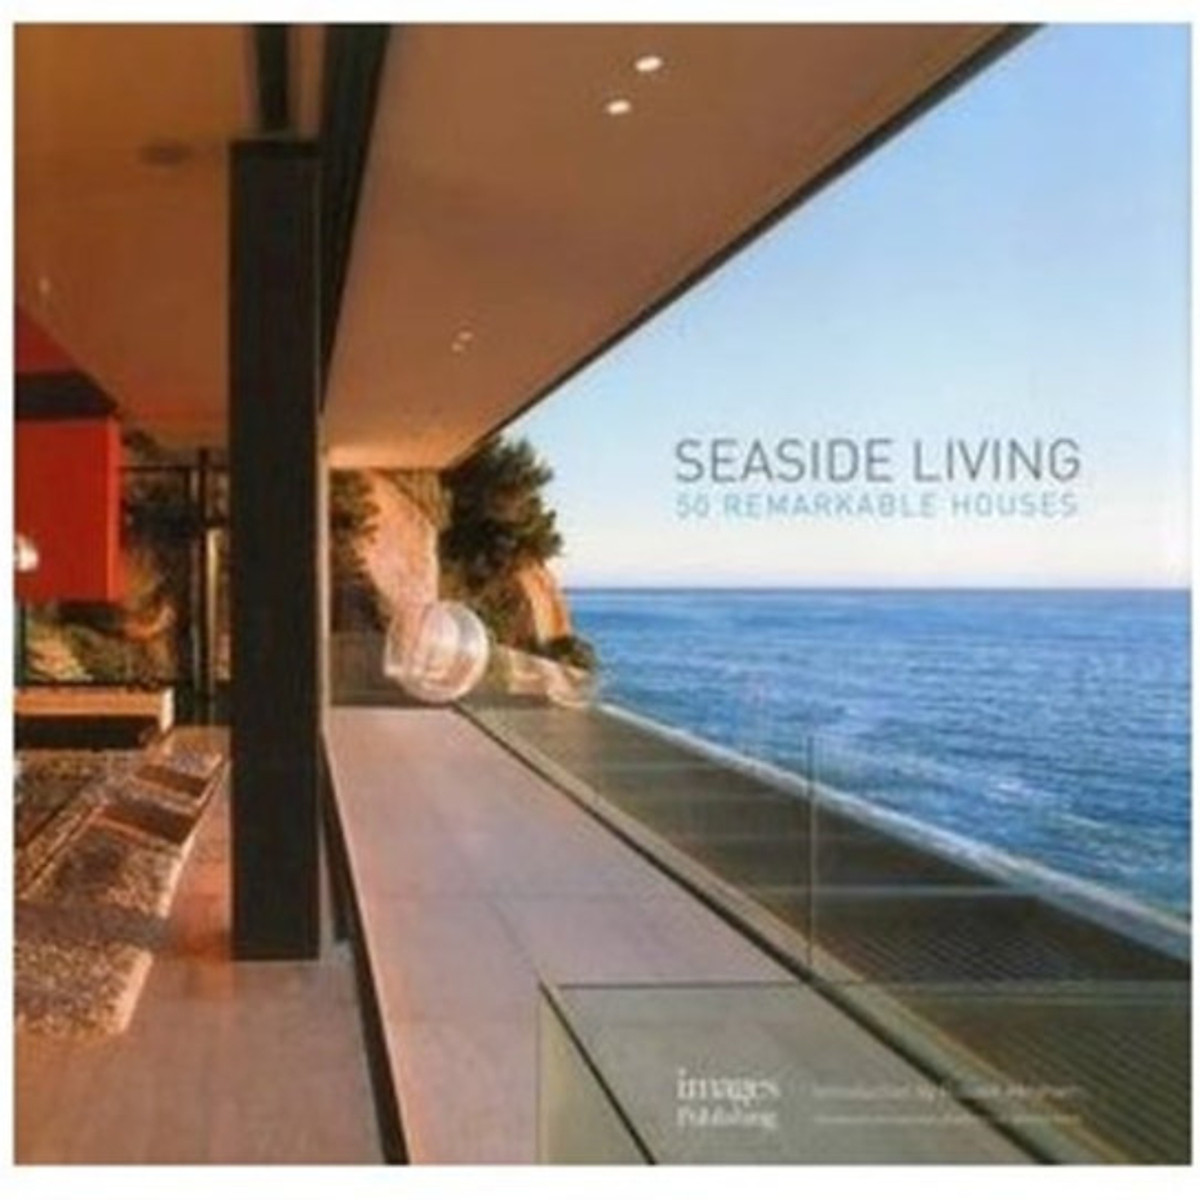  Seaside Living: 50 Remarkable Houses